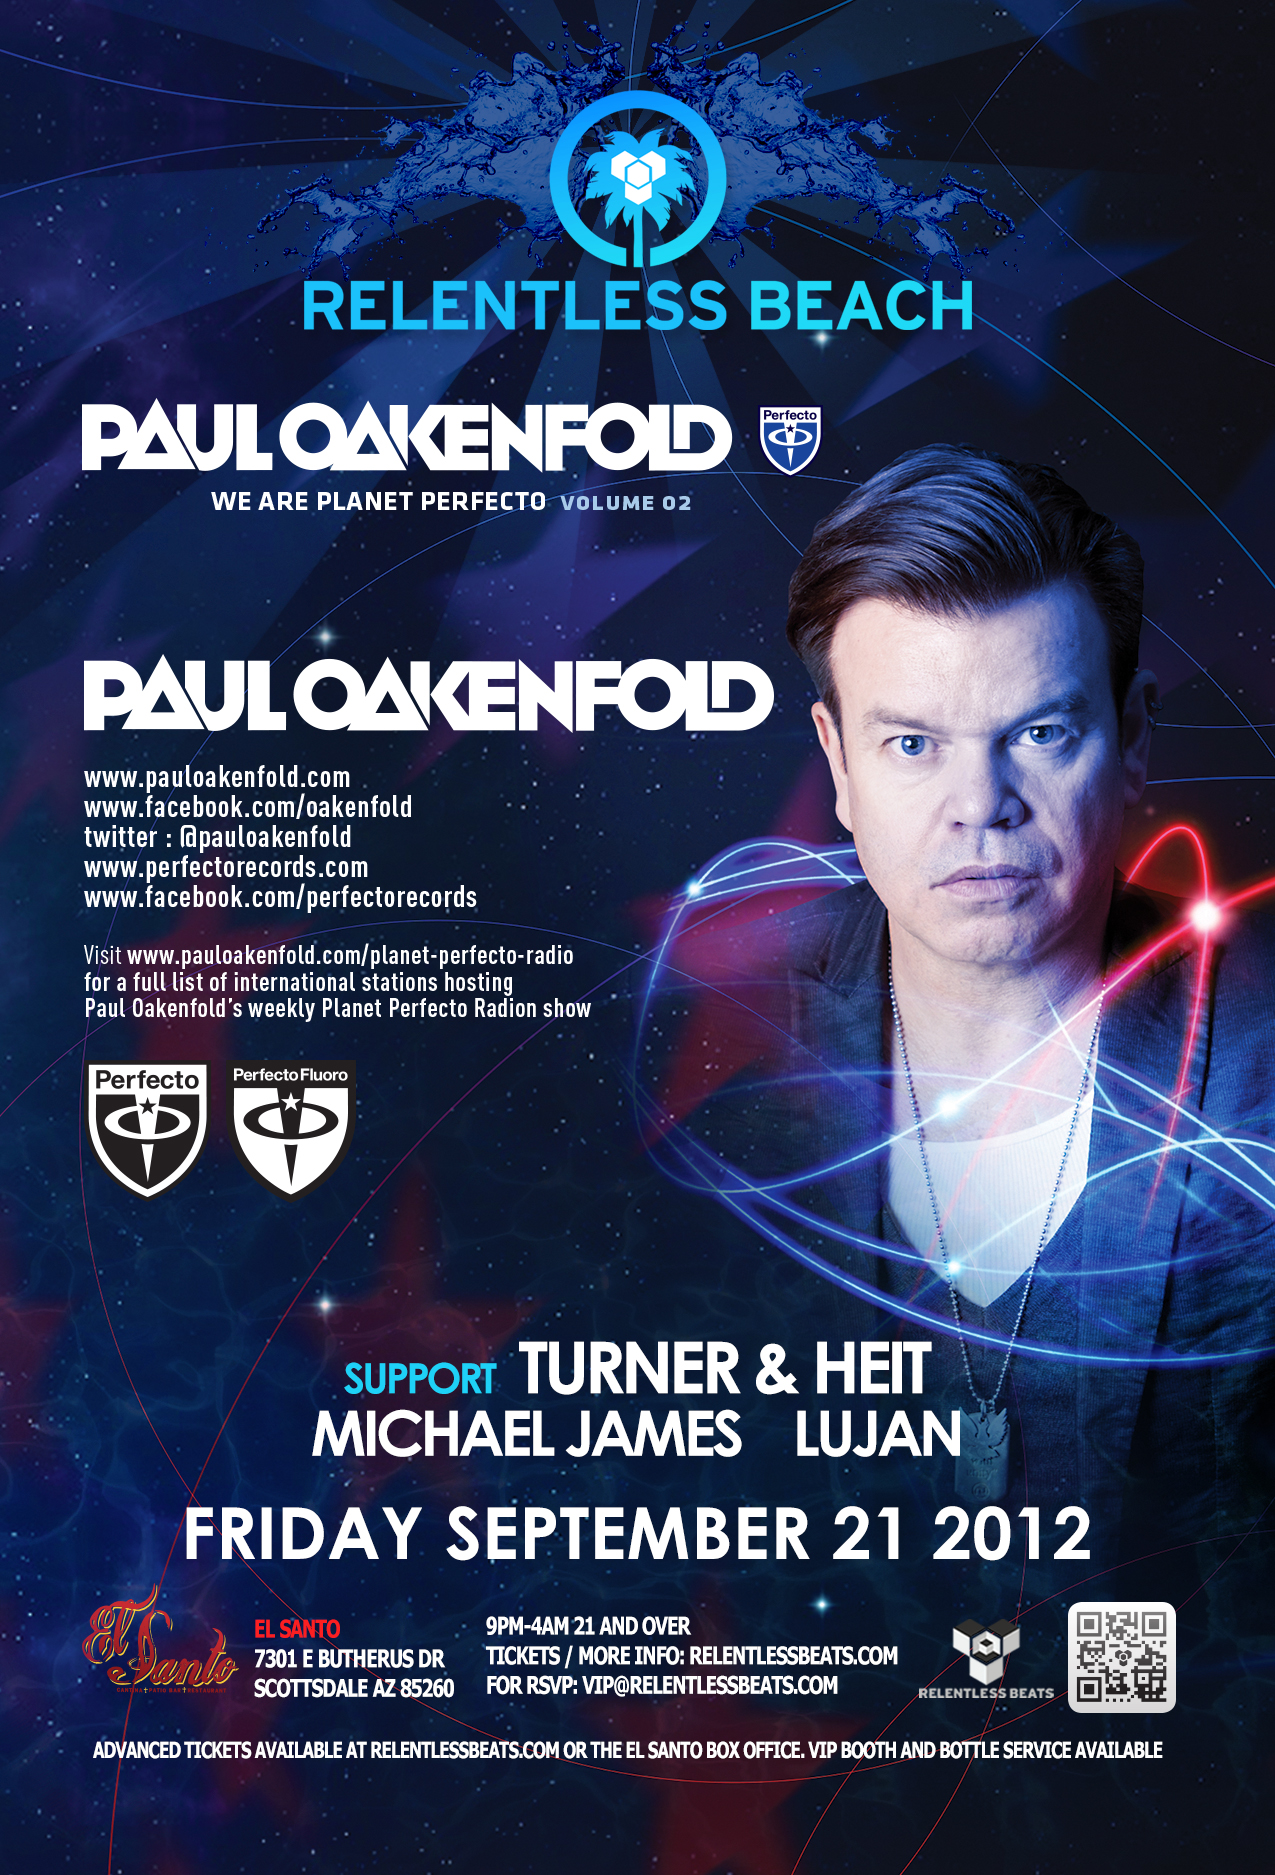 Paul Oakenfold @ Relentless Beach on 09/21/12